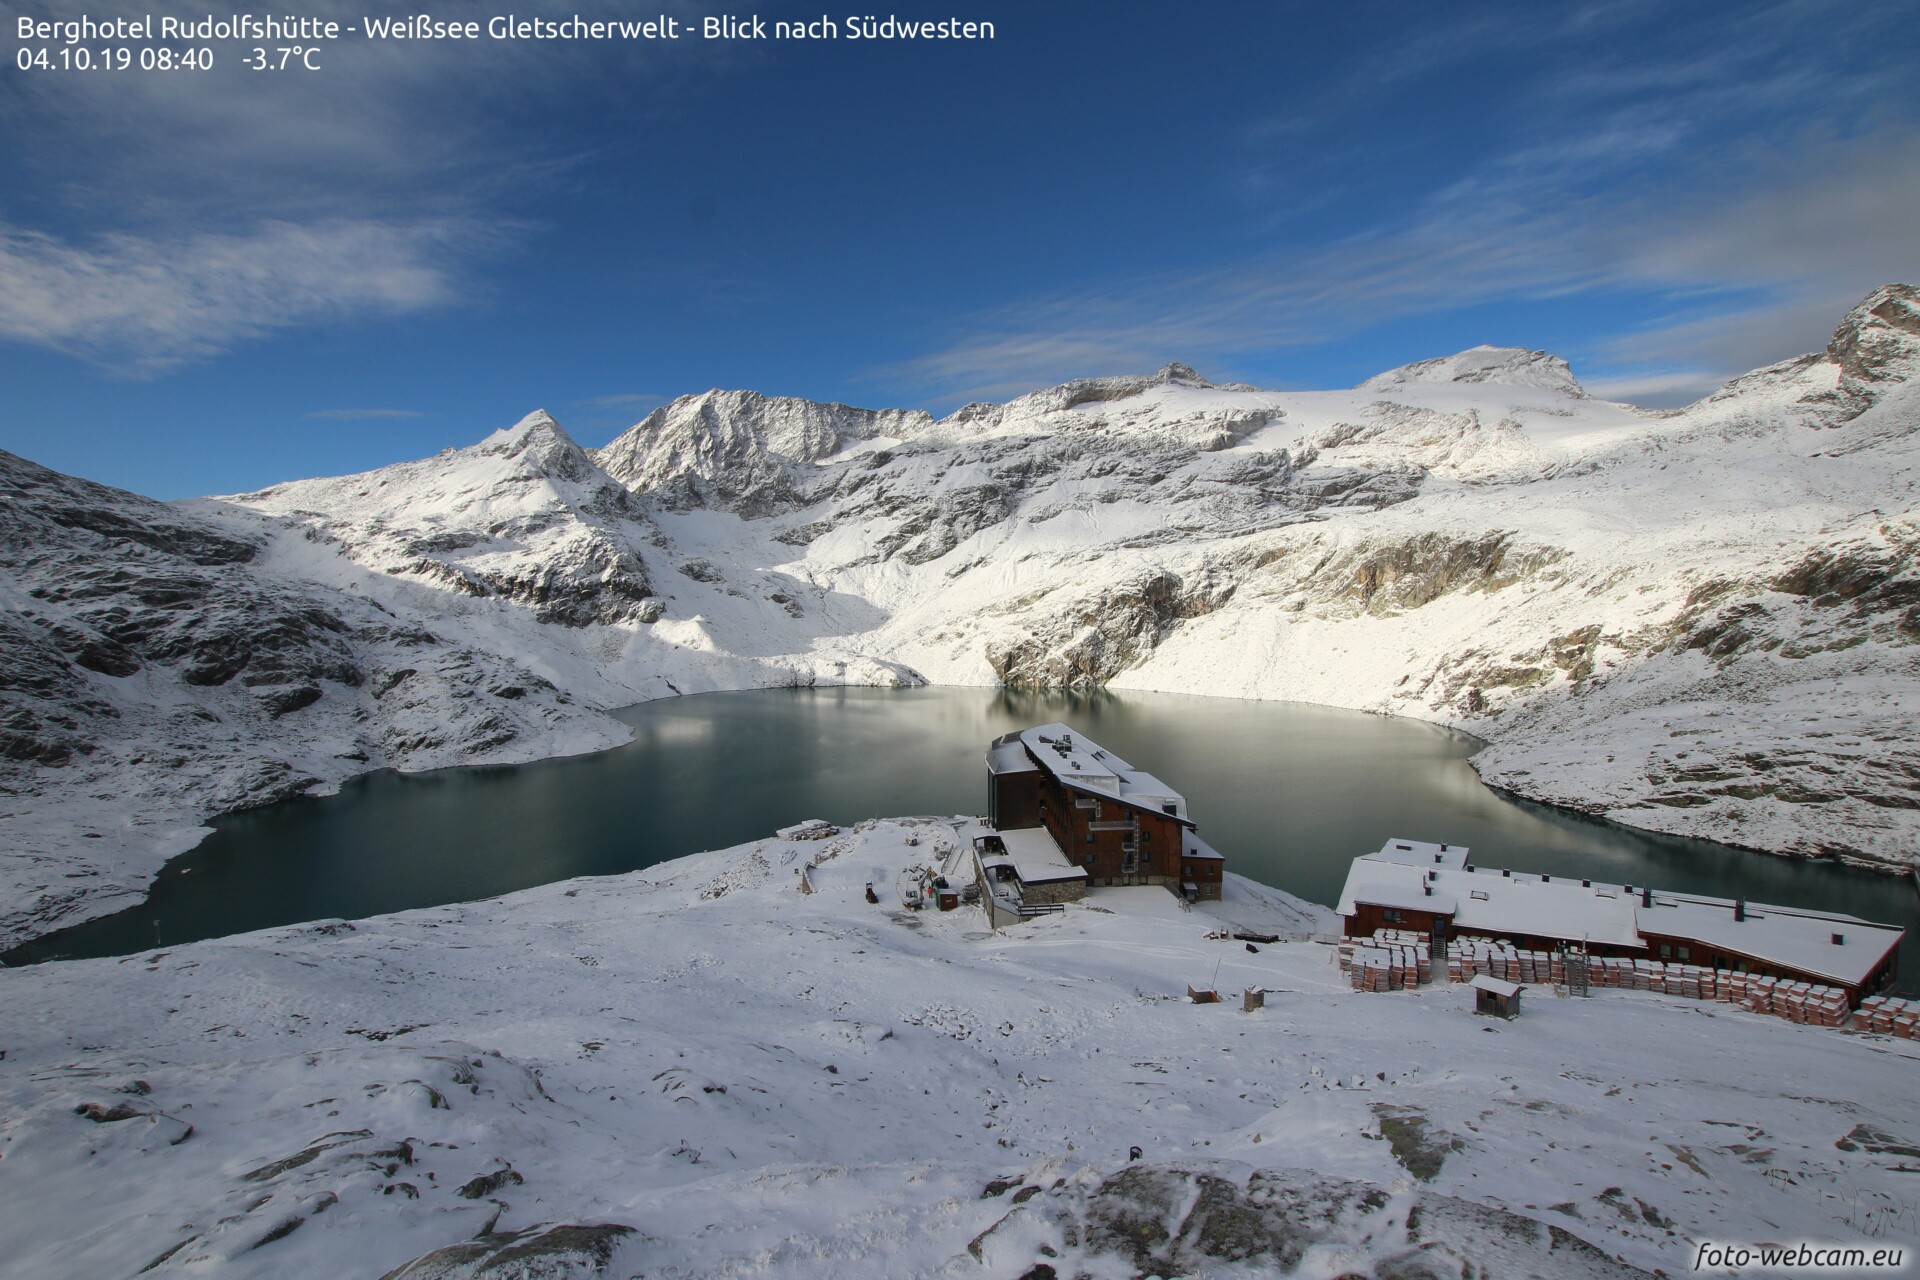 Alpen - Storing na storing zorgen voor sneeuw in de bergen